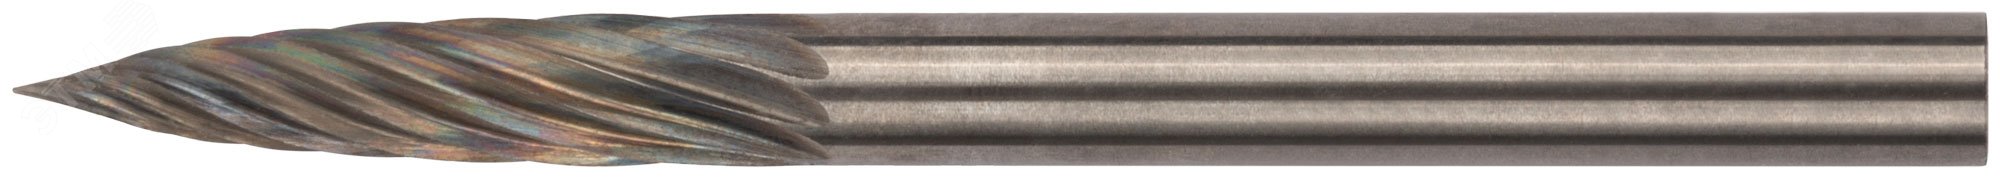 Шарошка карбидная Профи, штифт 3 мм (мини), цилиндрическая с острым наконечником 36584 FIT - превью